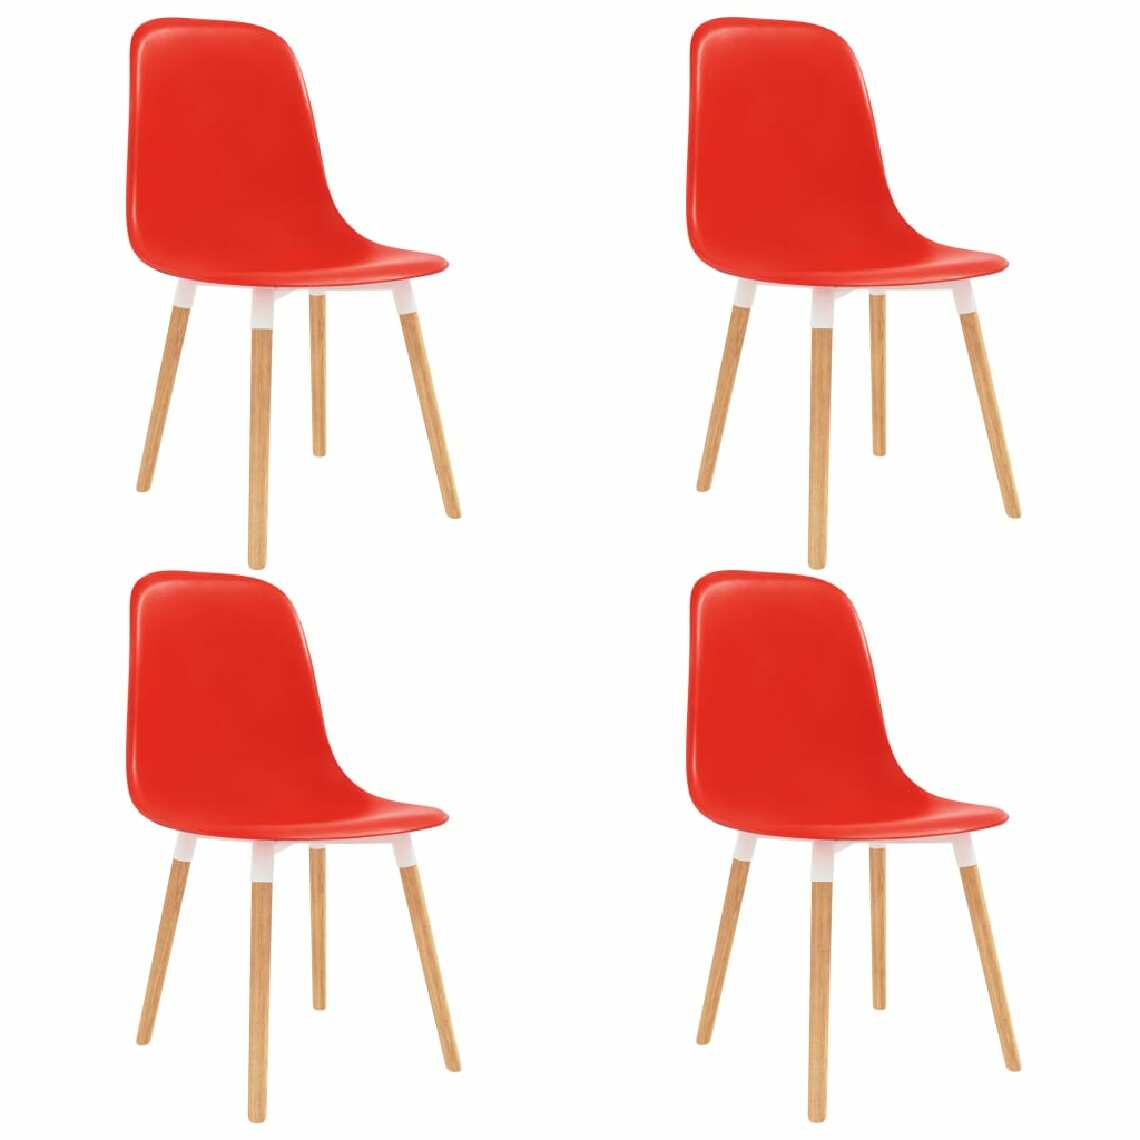 Chunhelife - Chunhelife Chaises de salle à manger 4 pcs Rouge Plastique - Chaises